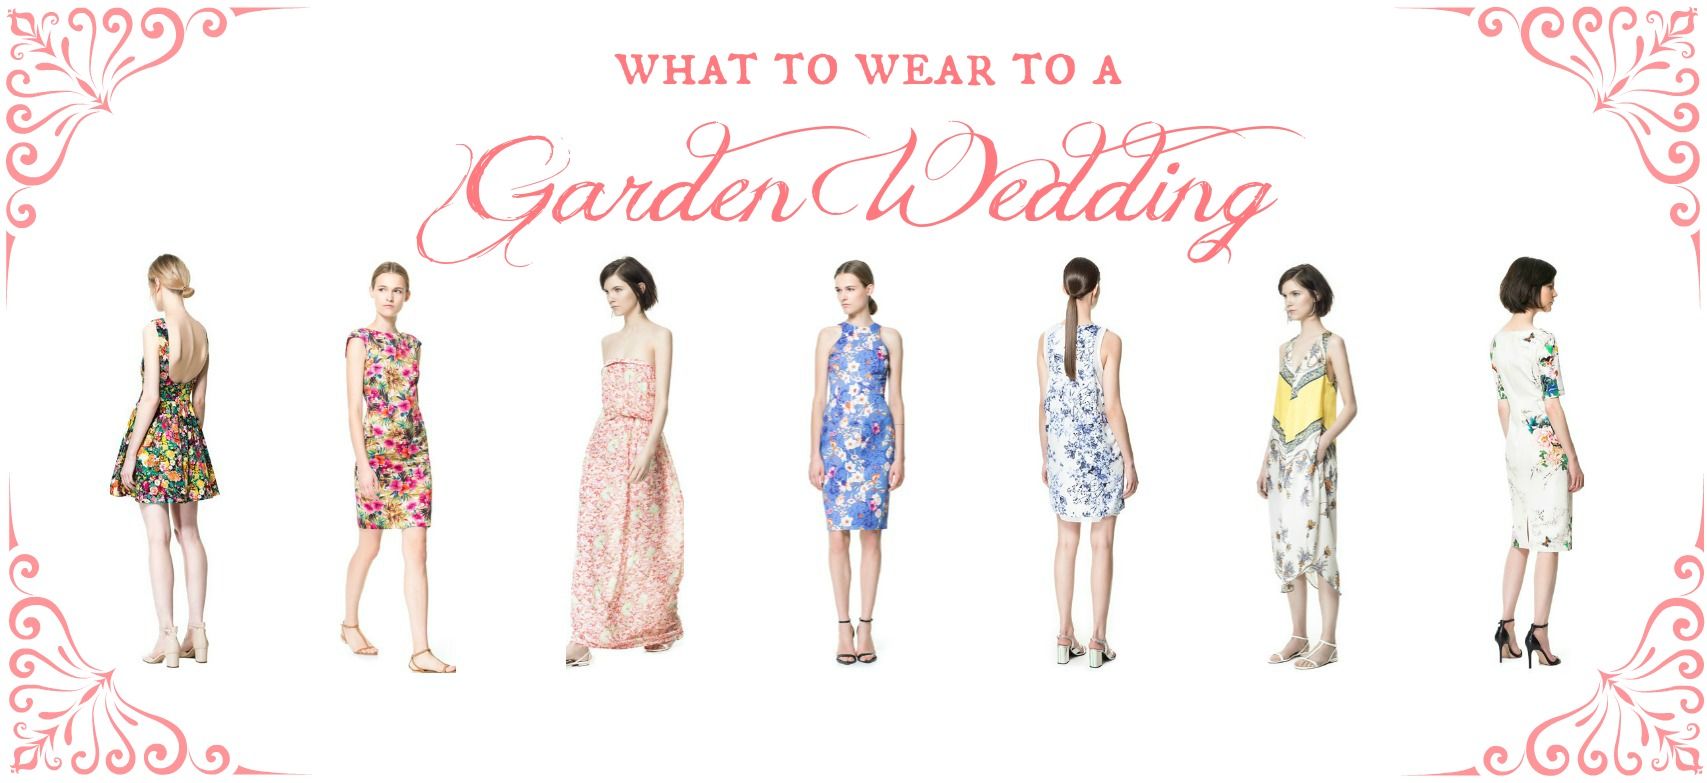 garden chic wedding attire